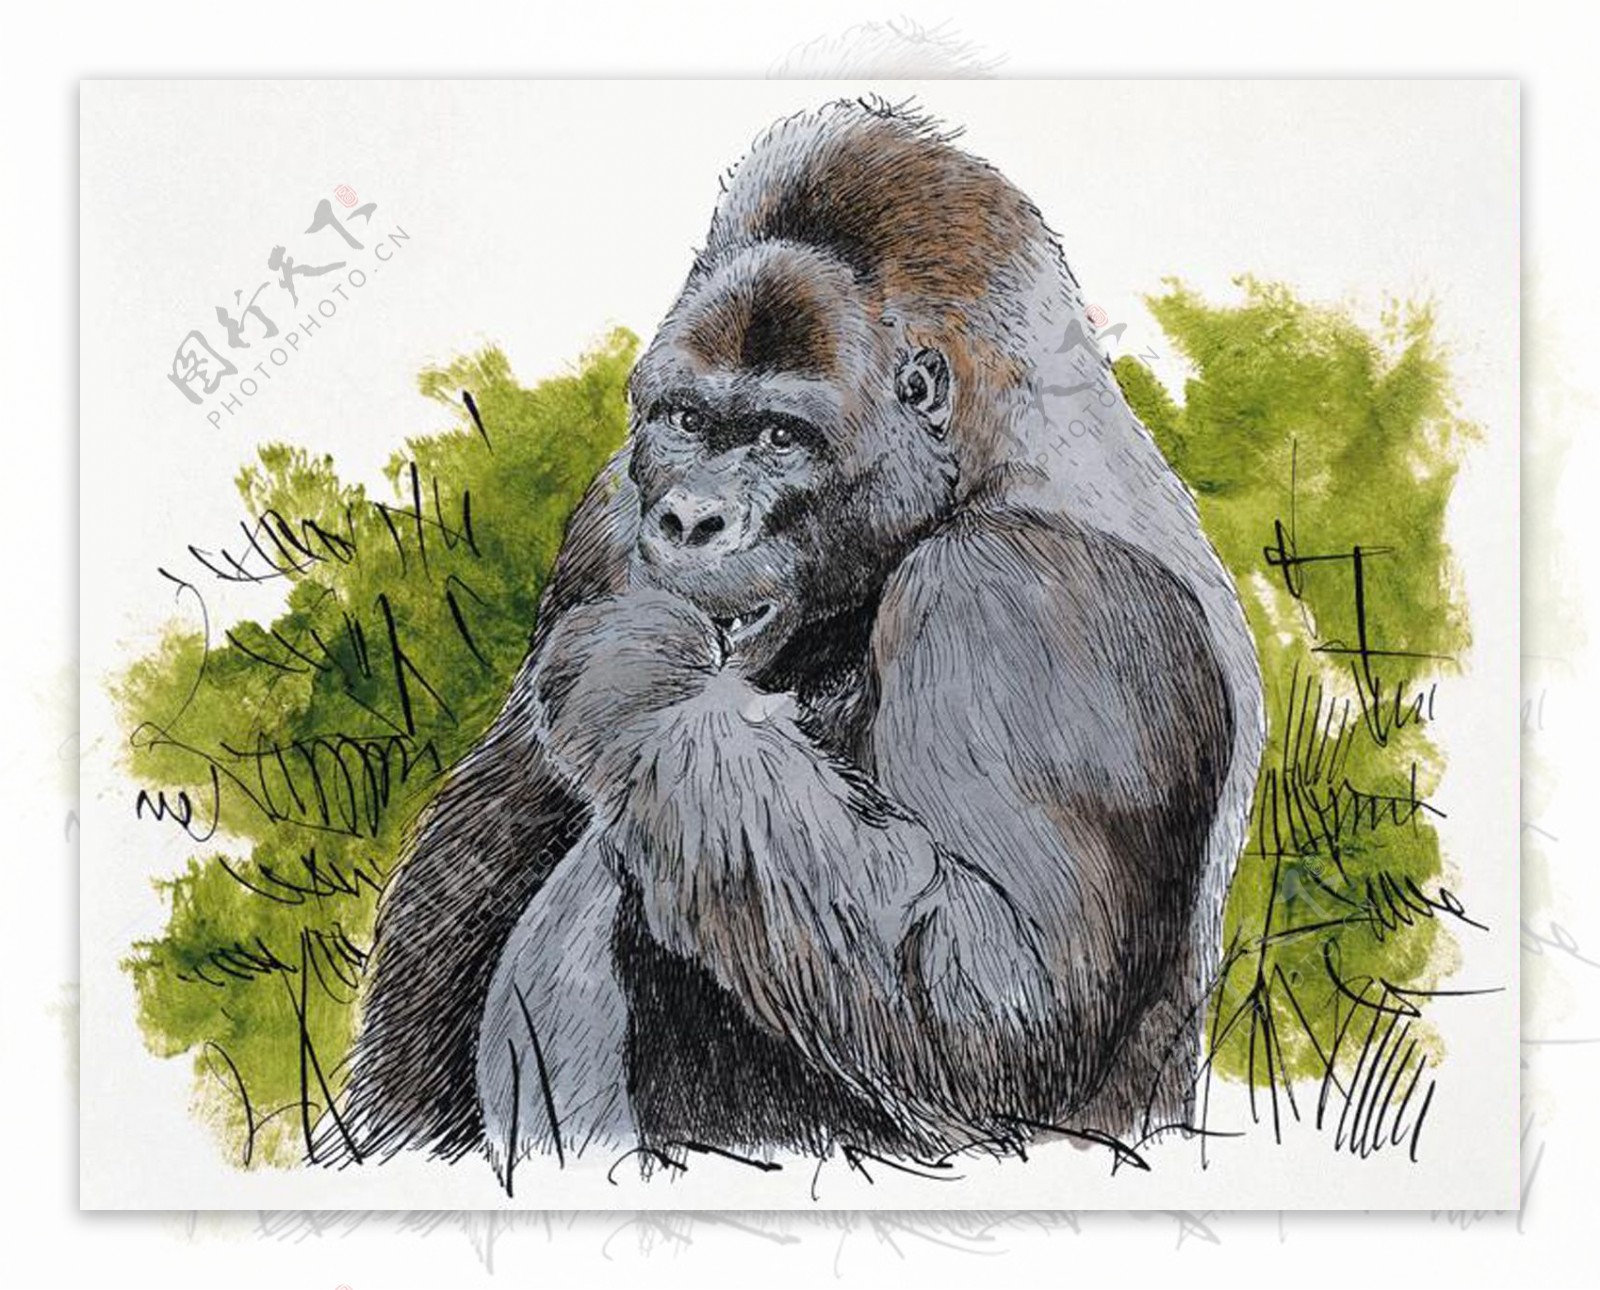 大猩猩灵长动物动物插图30